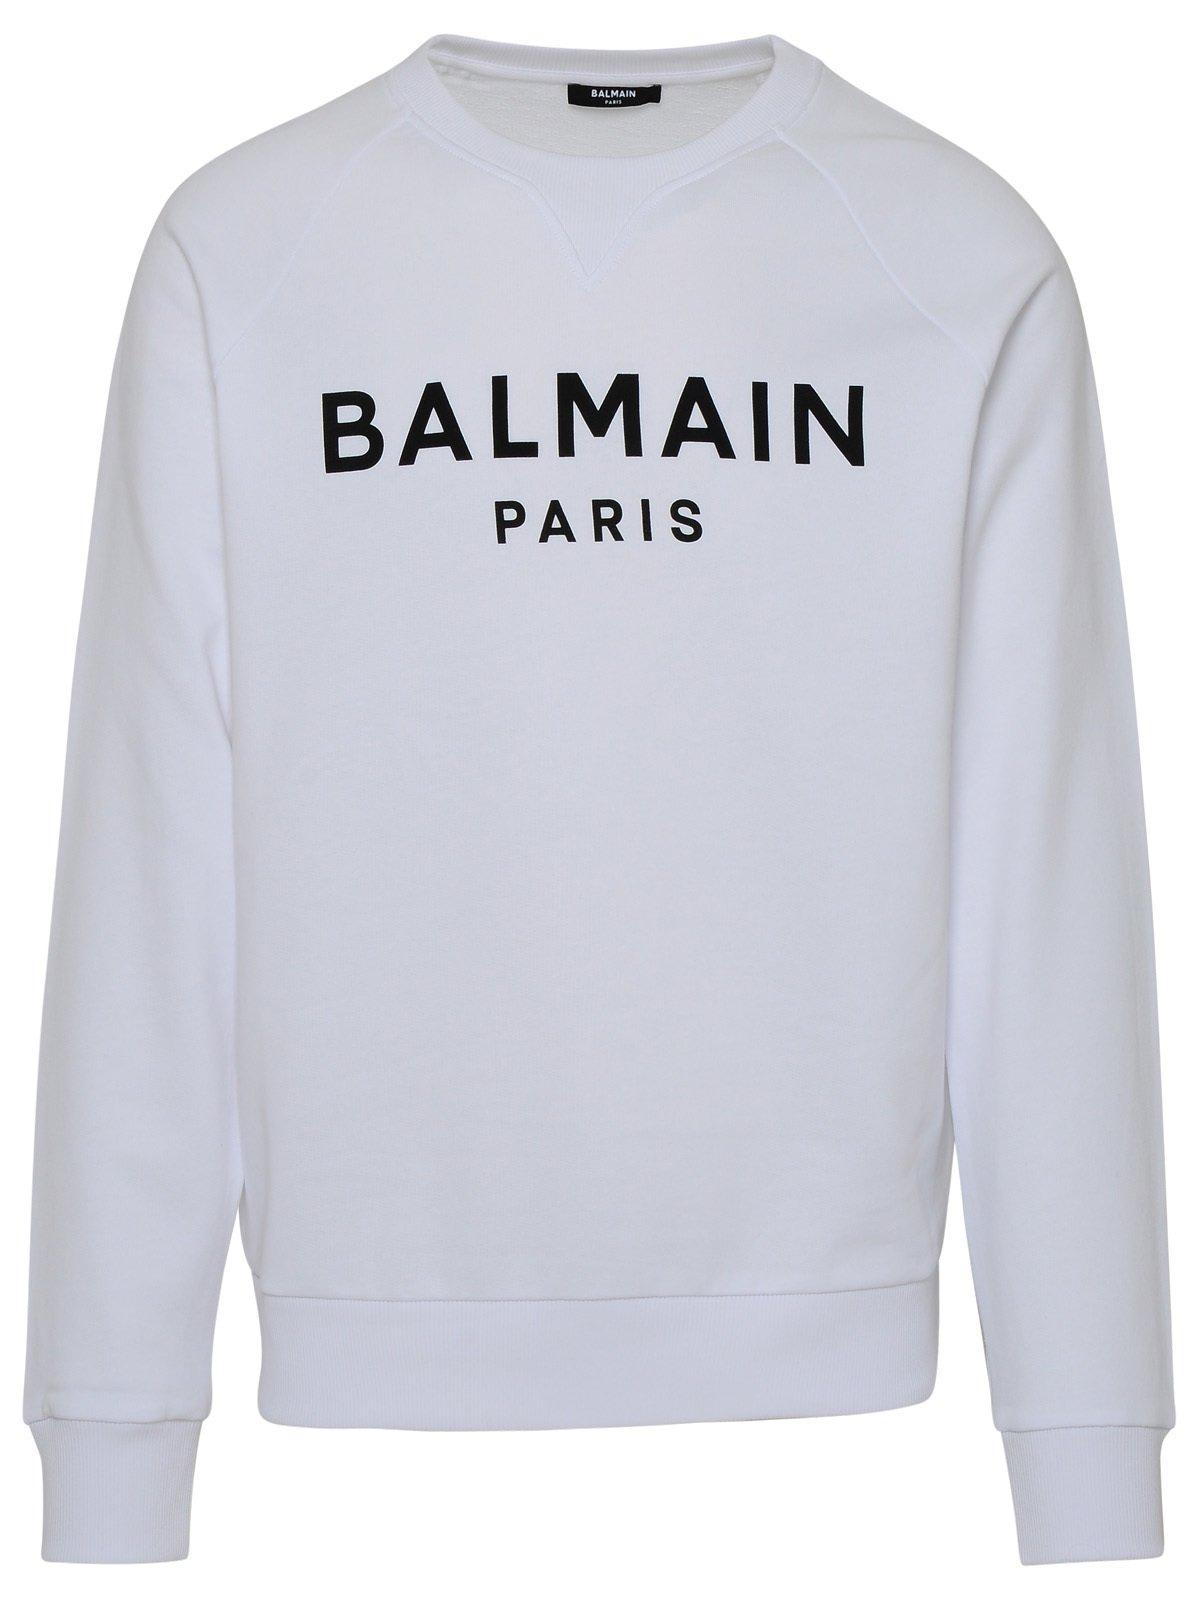 Balmain Logo Printed Crewneck Sweater